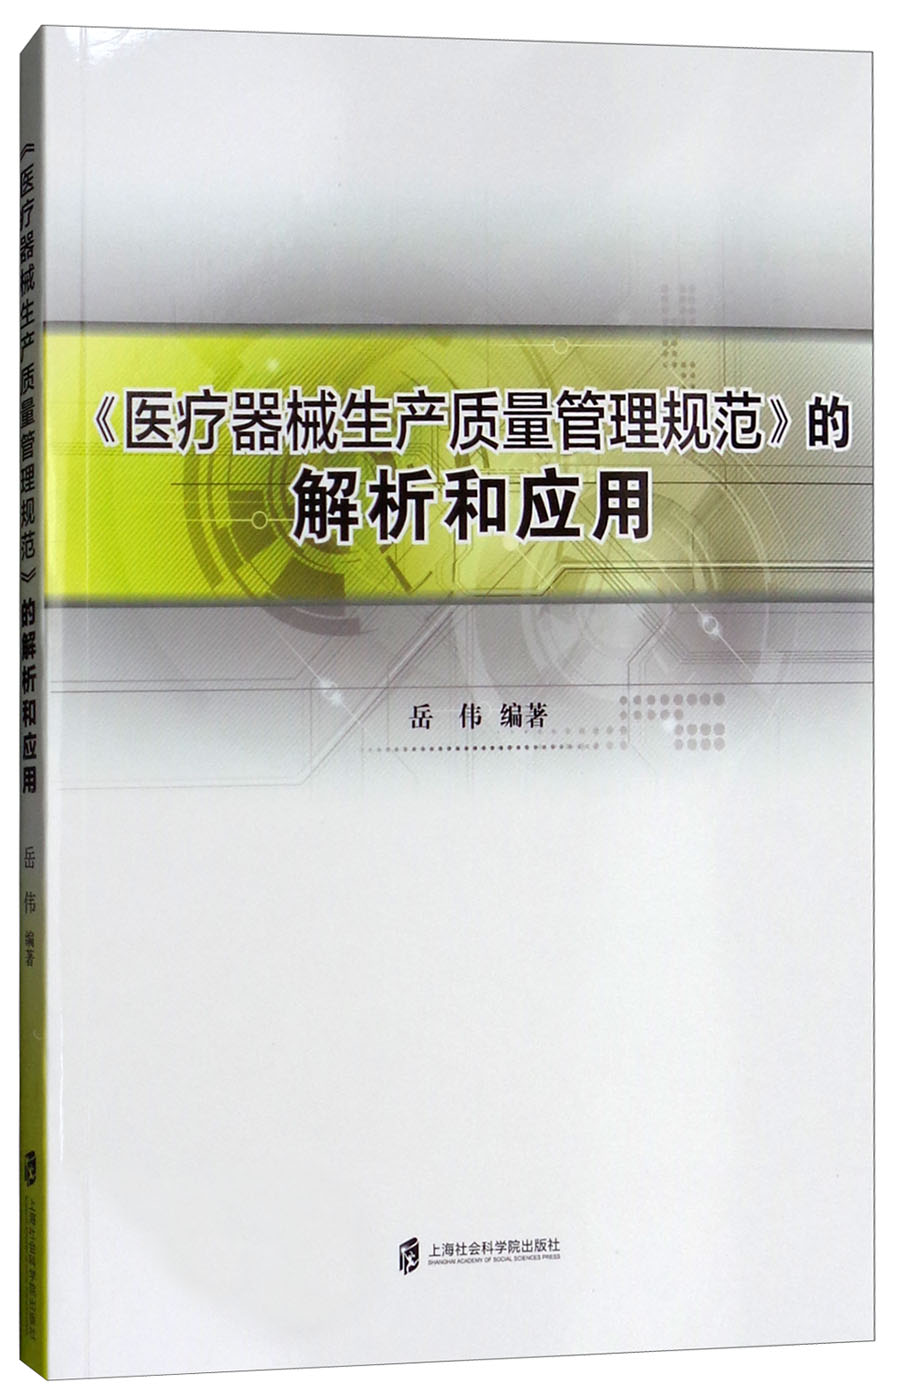 《医疗器械生产质量管理规范》的解析和应用岳伟9787552009309